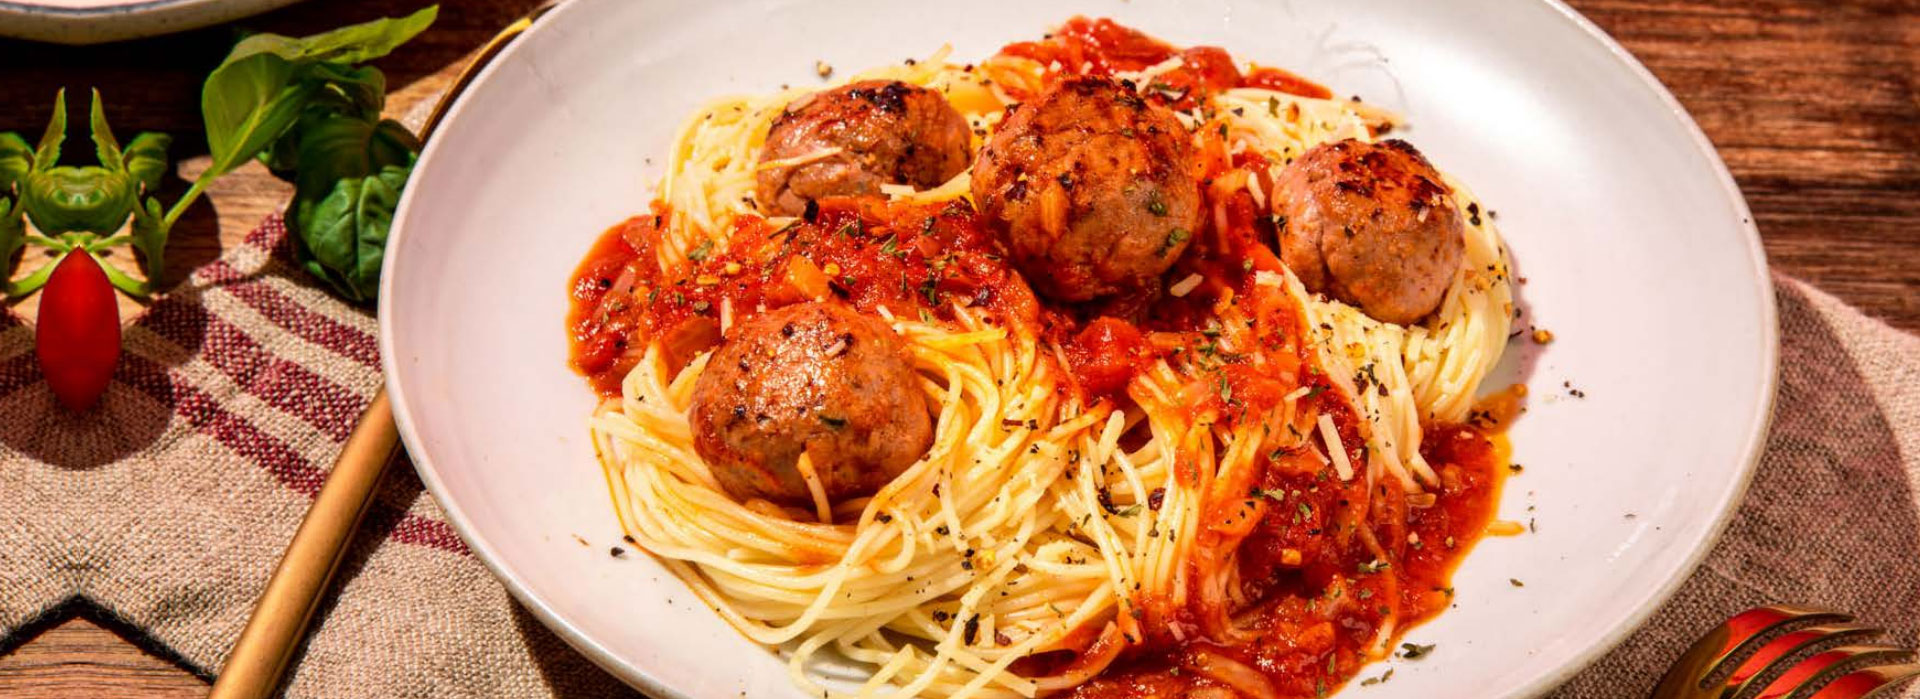 pasta recipes,meatballs,meatballs recipe,meatballs pasta